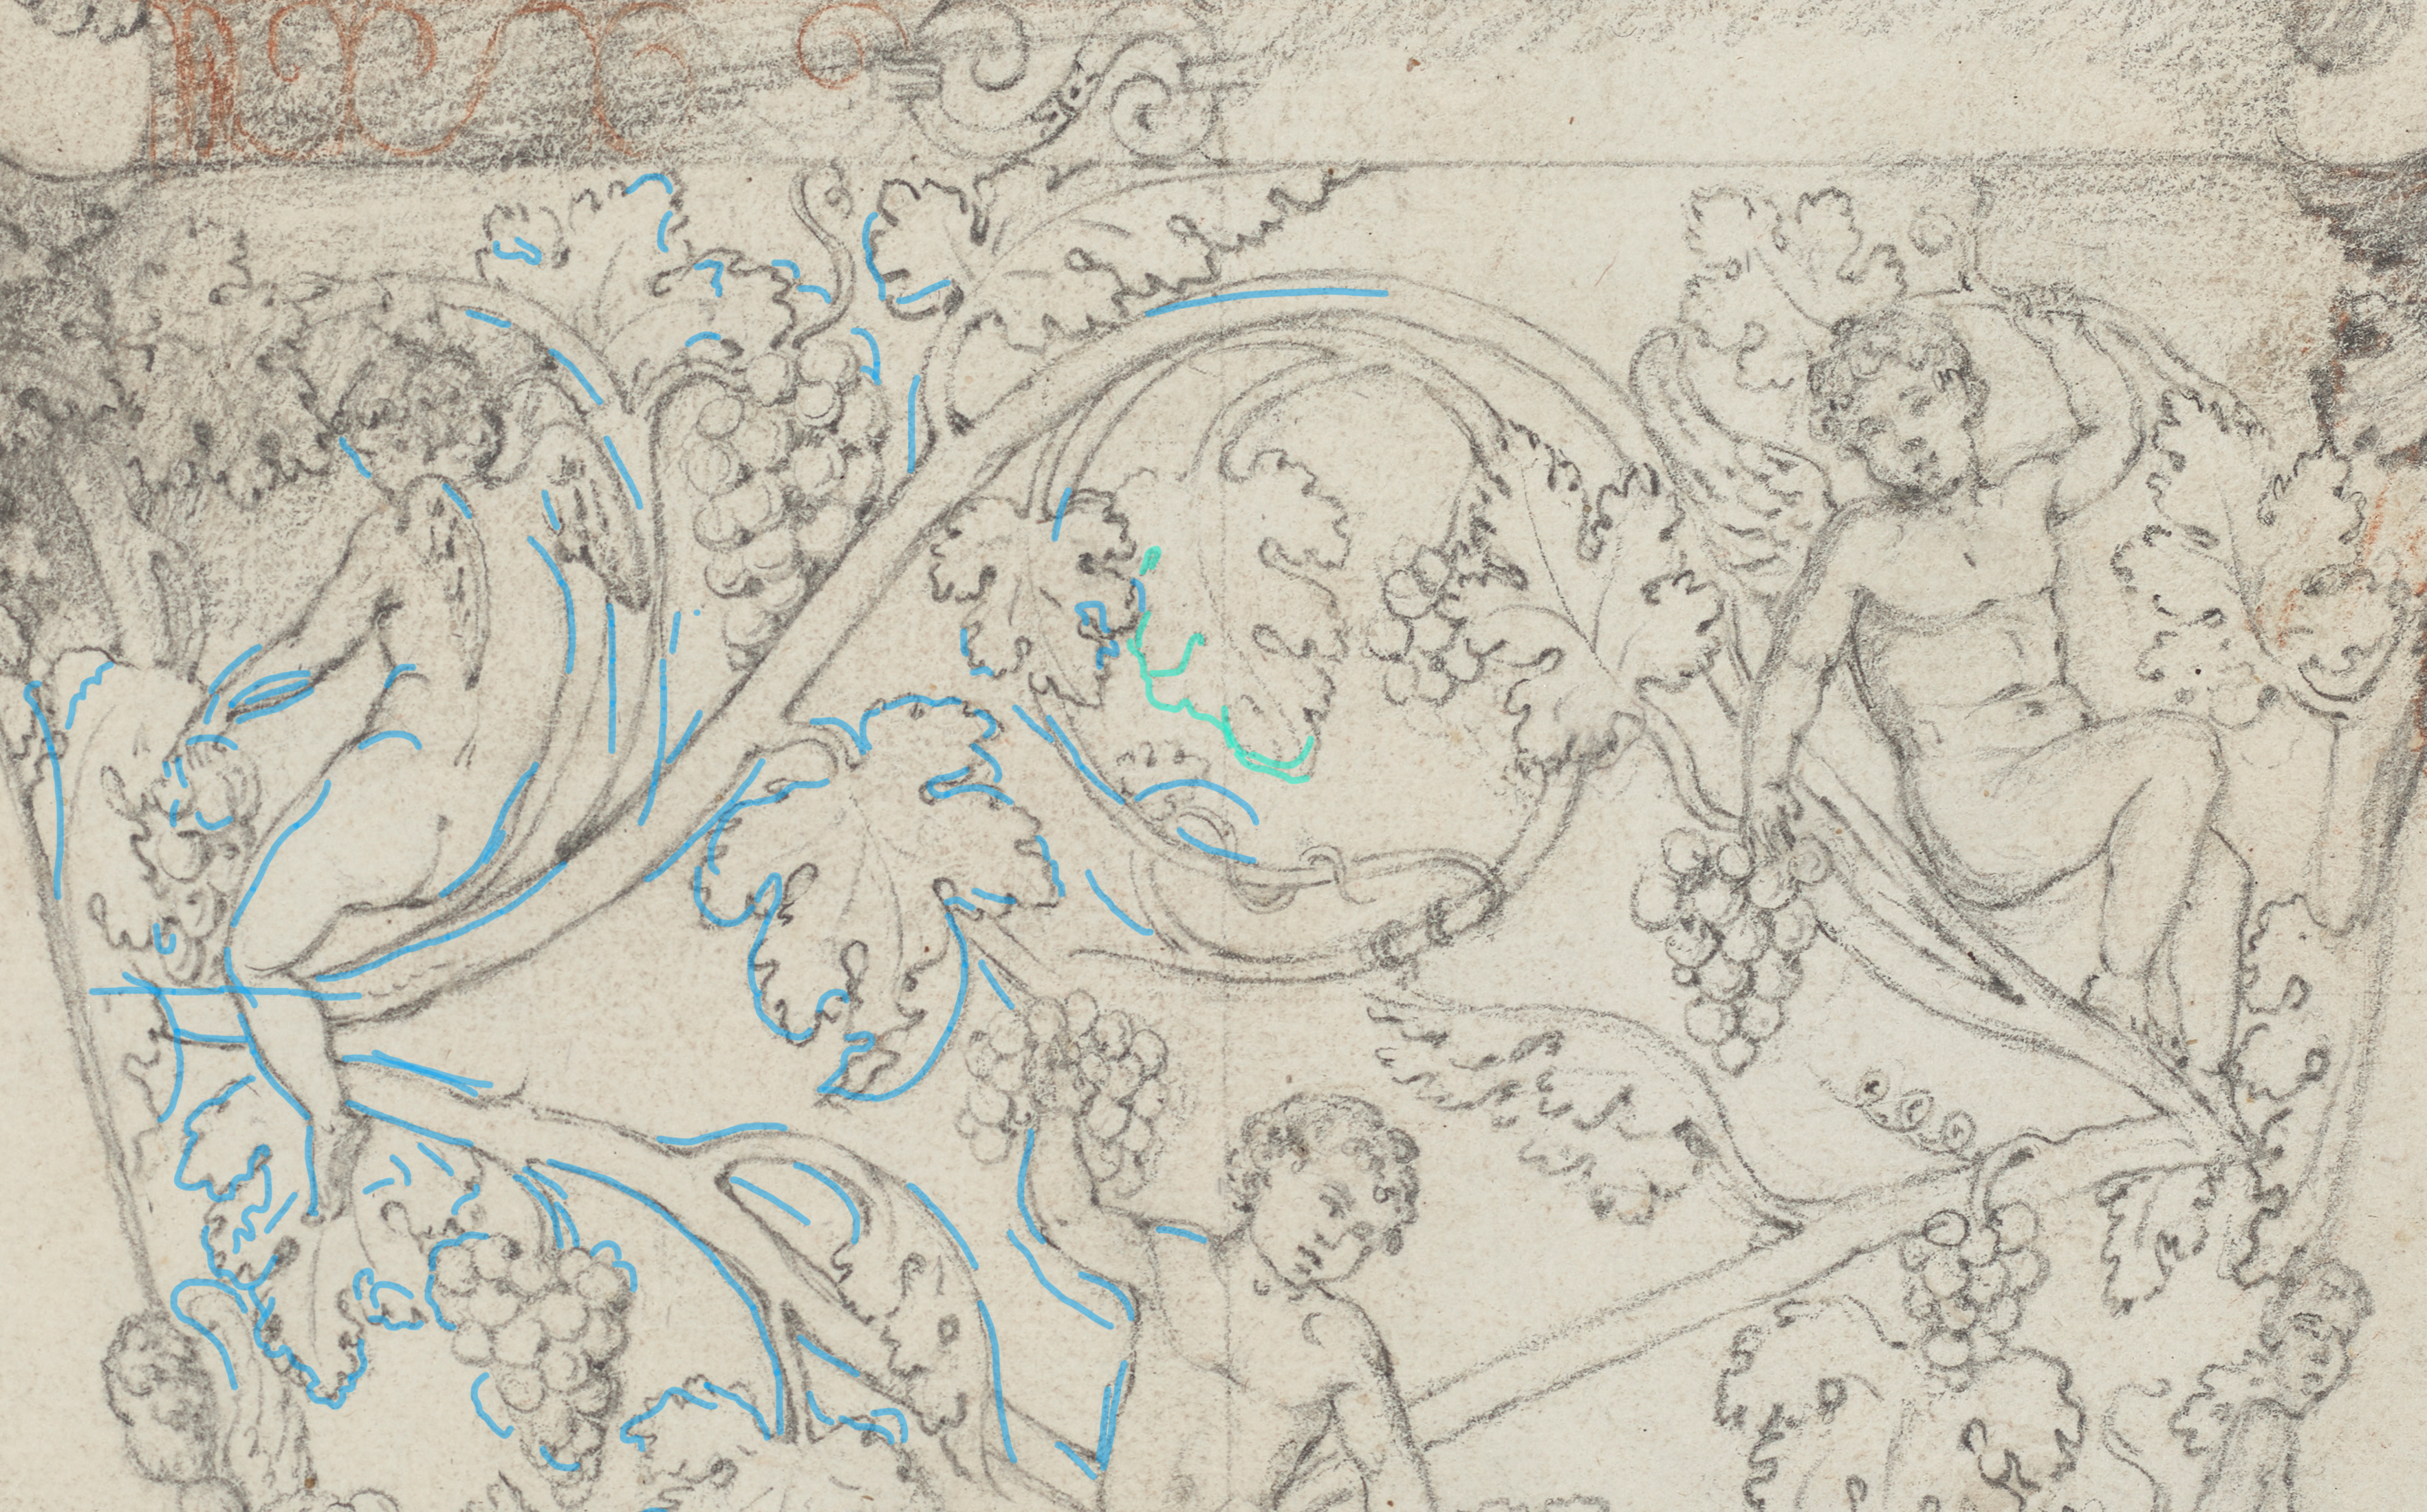 Detailausschnitt der Zeichnung mit digital eingezeichneten Spuren historischer Nutzung